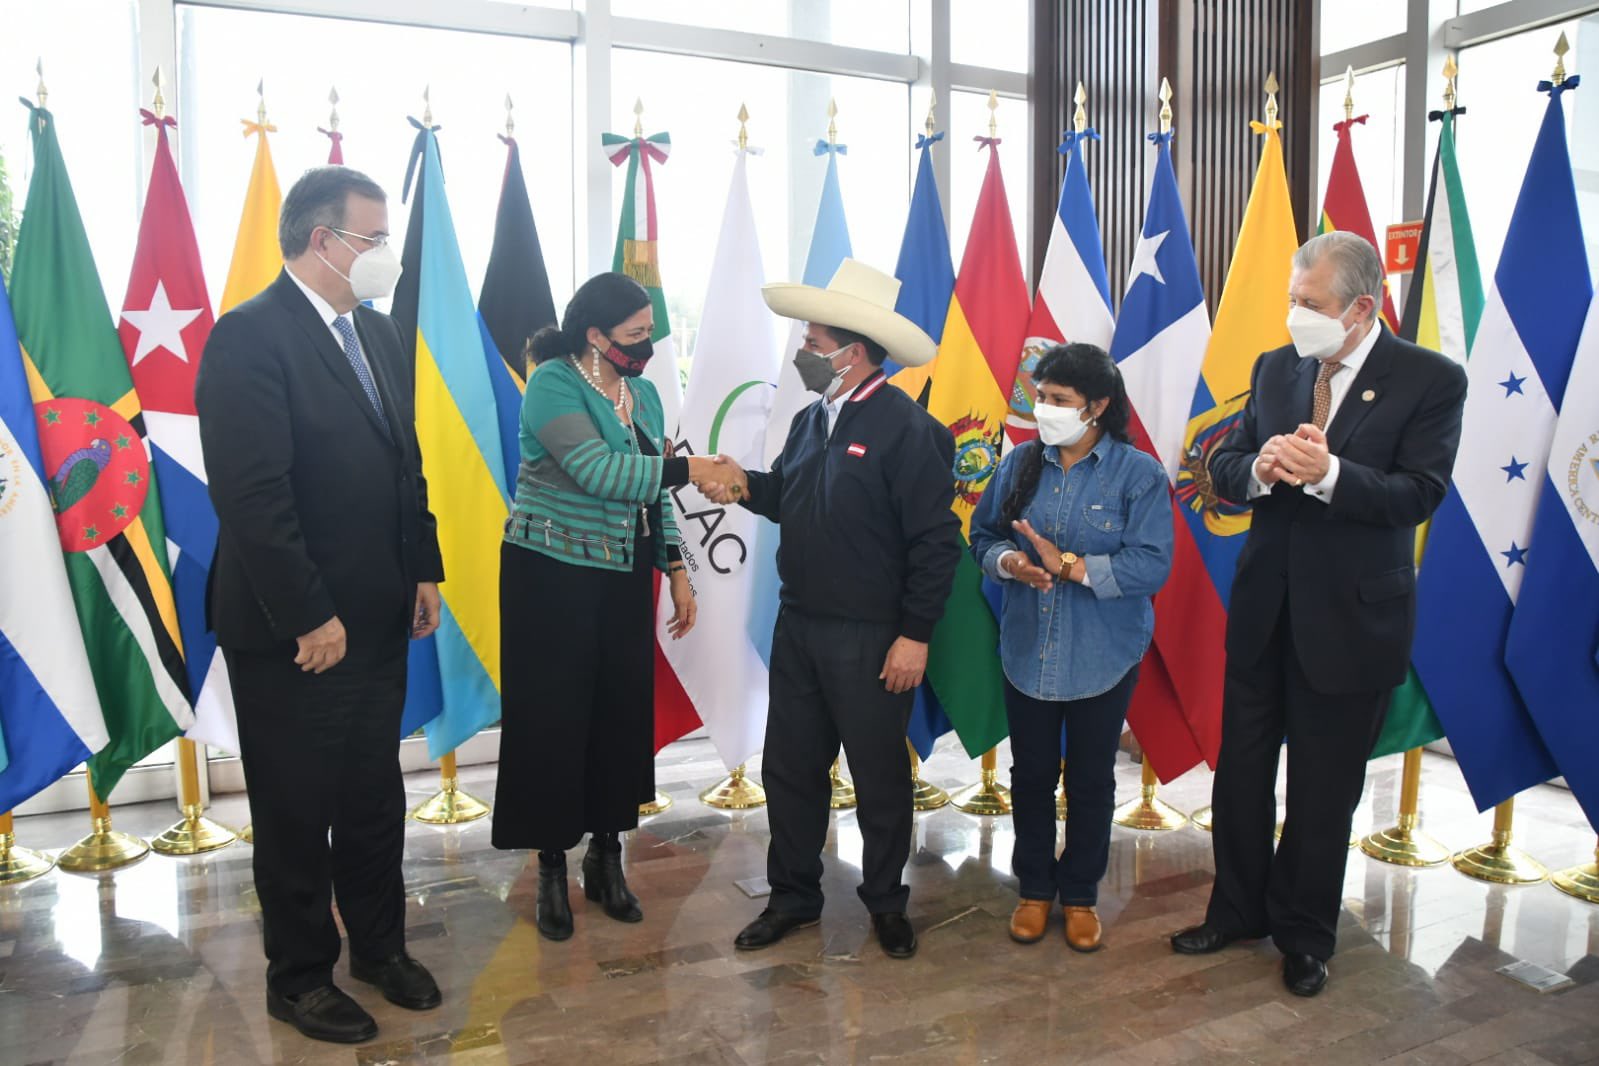 Primera dama, Lilia Paredes recibe apoyo tras críticas a su ropa en evento internacional